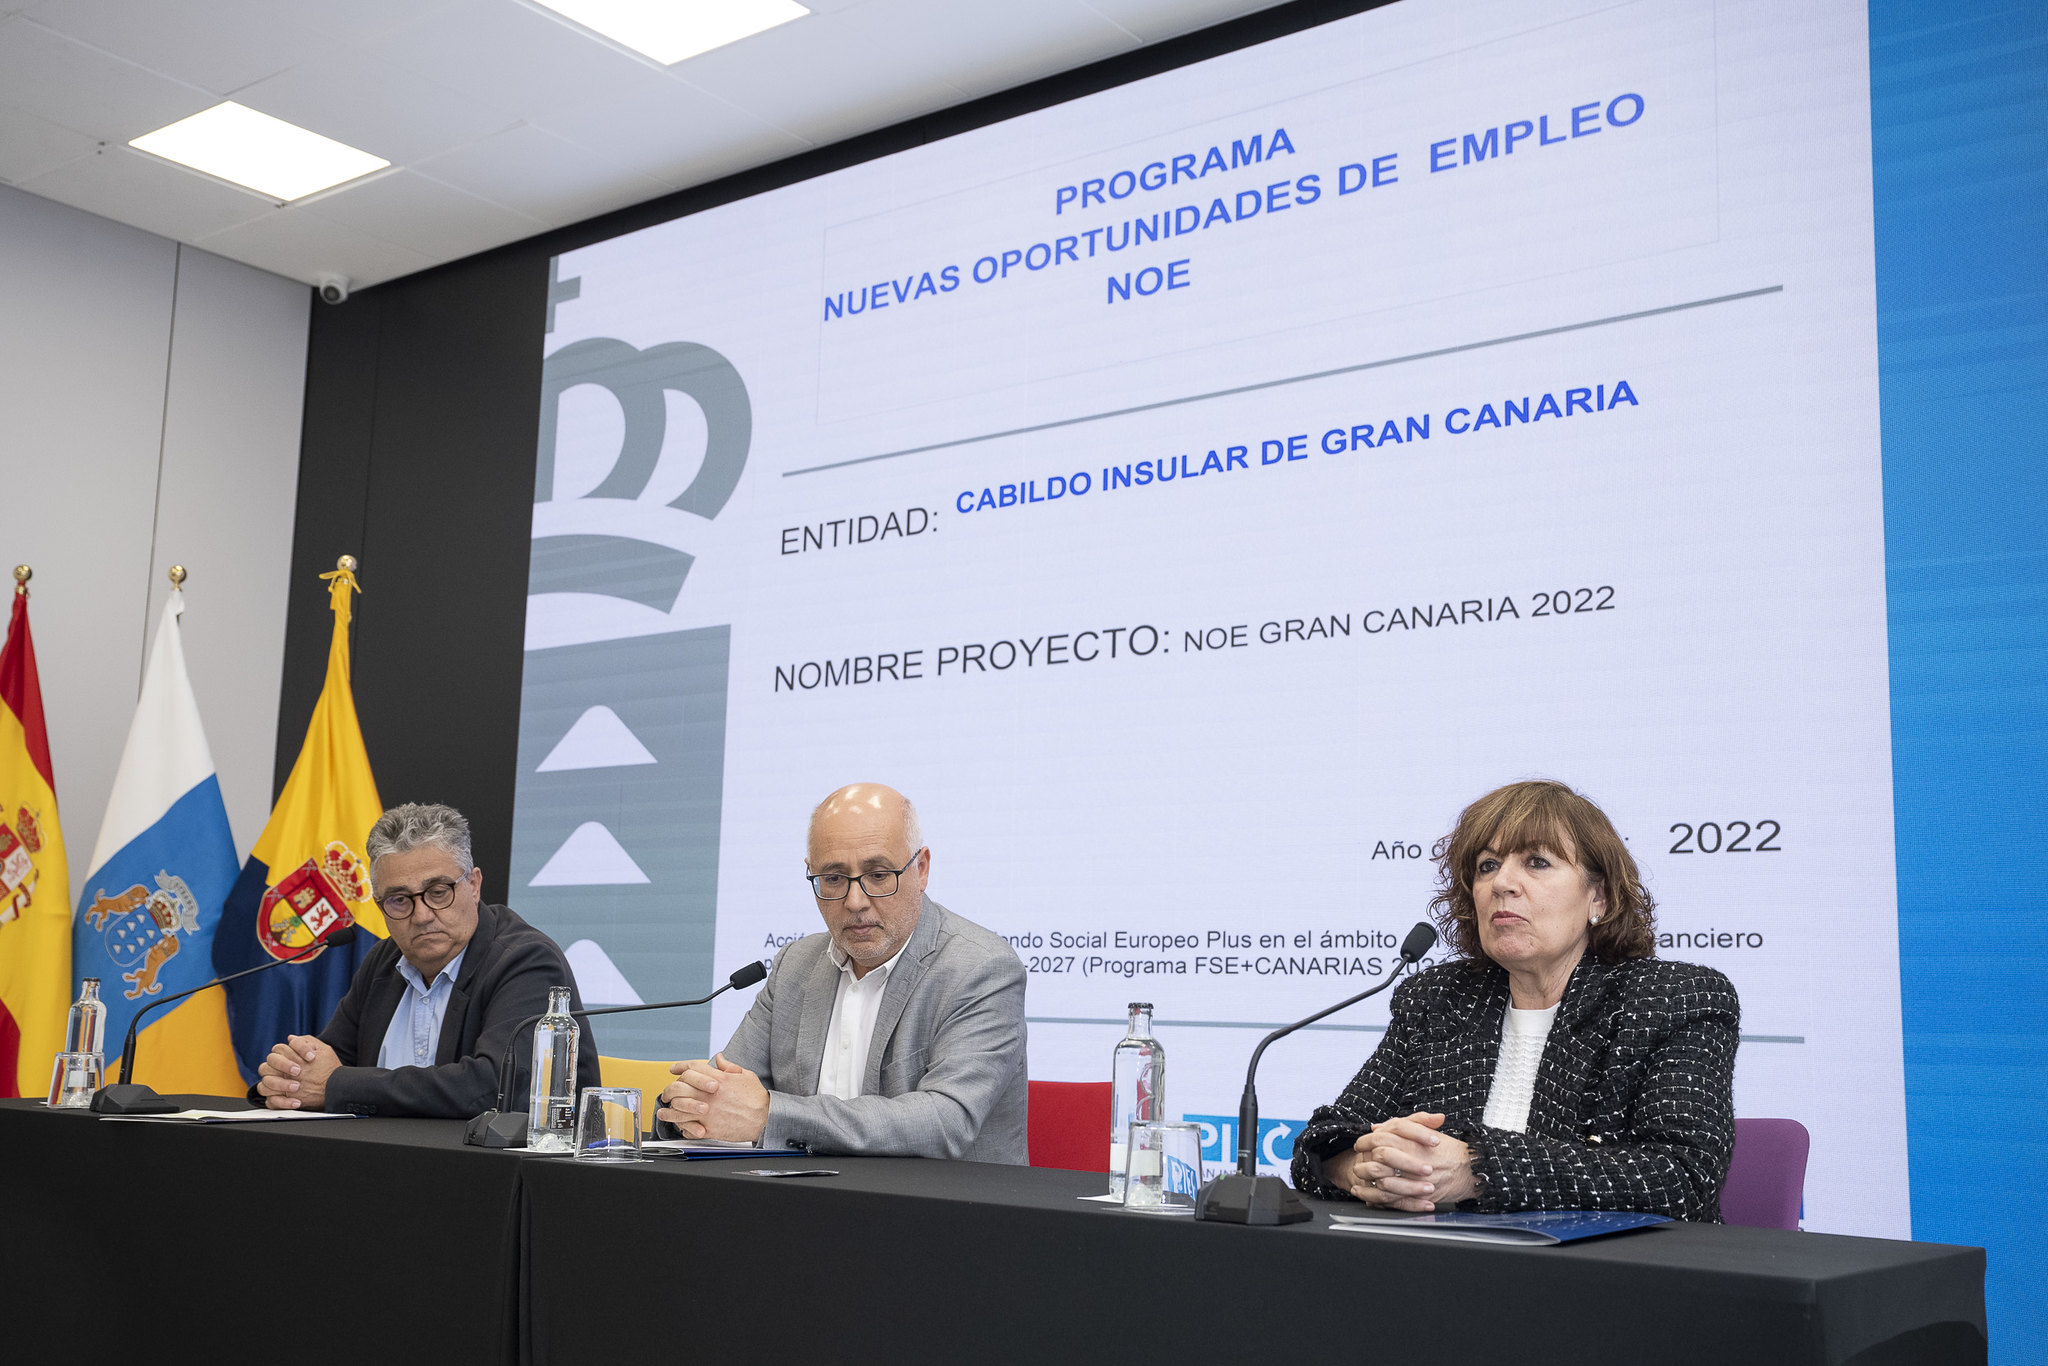 Proyecto Nuevas Oportunidades de Empleo del Cabildo de Gran Canaria 